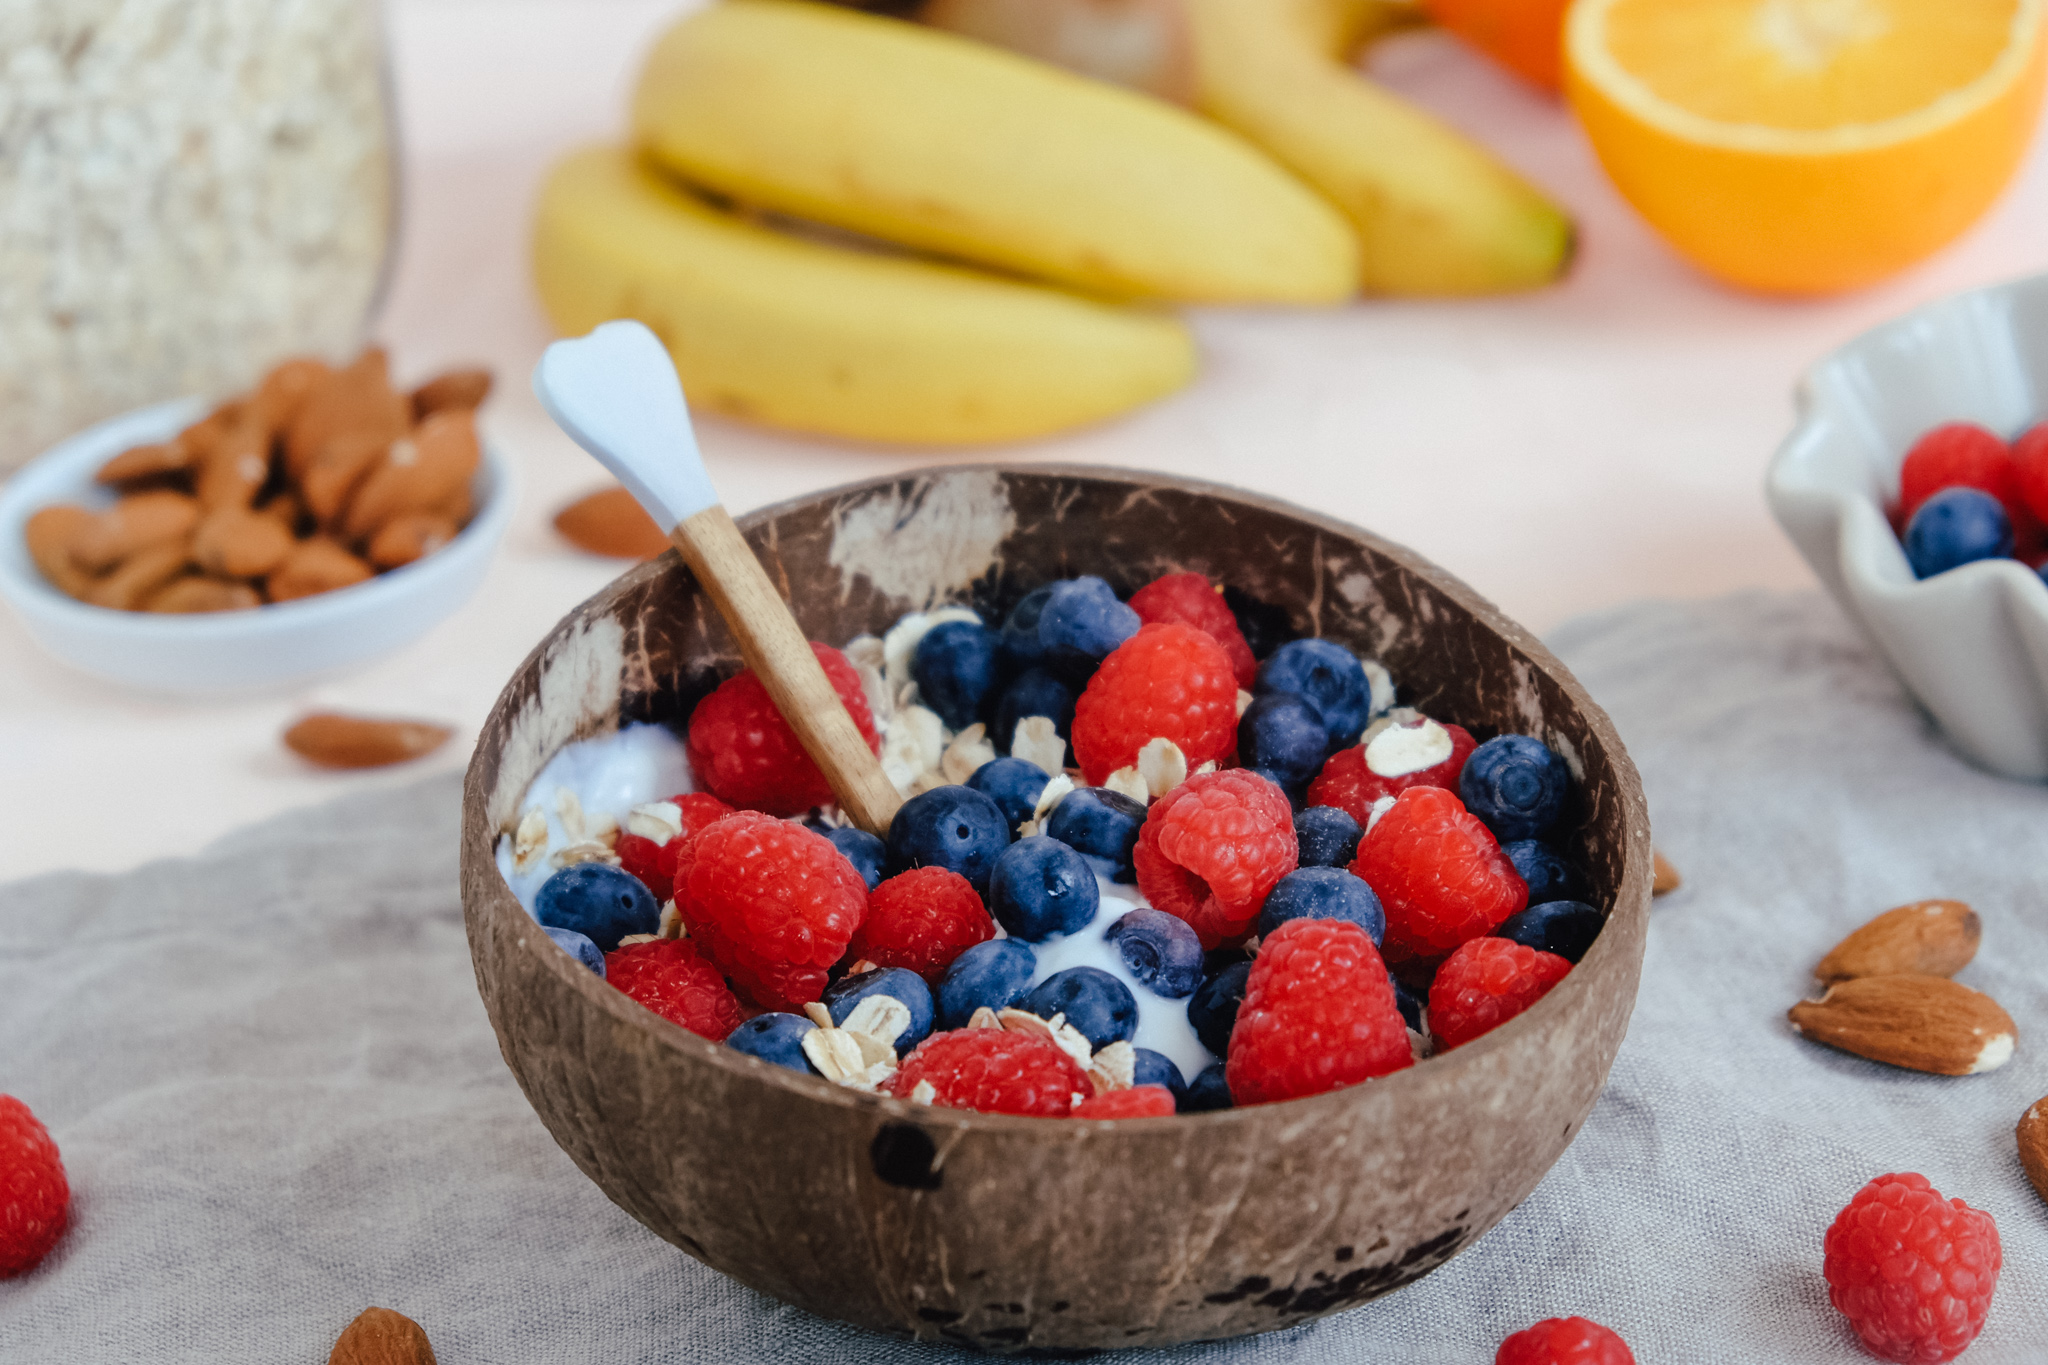 Juice Plus+ gesundes Frühstück: Müsli mit Joghurt und Früchten